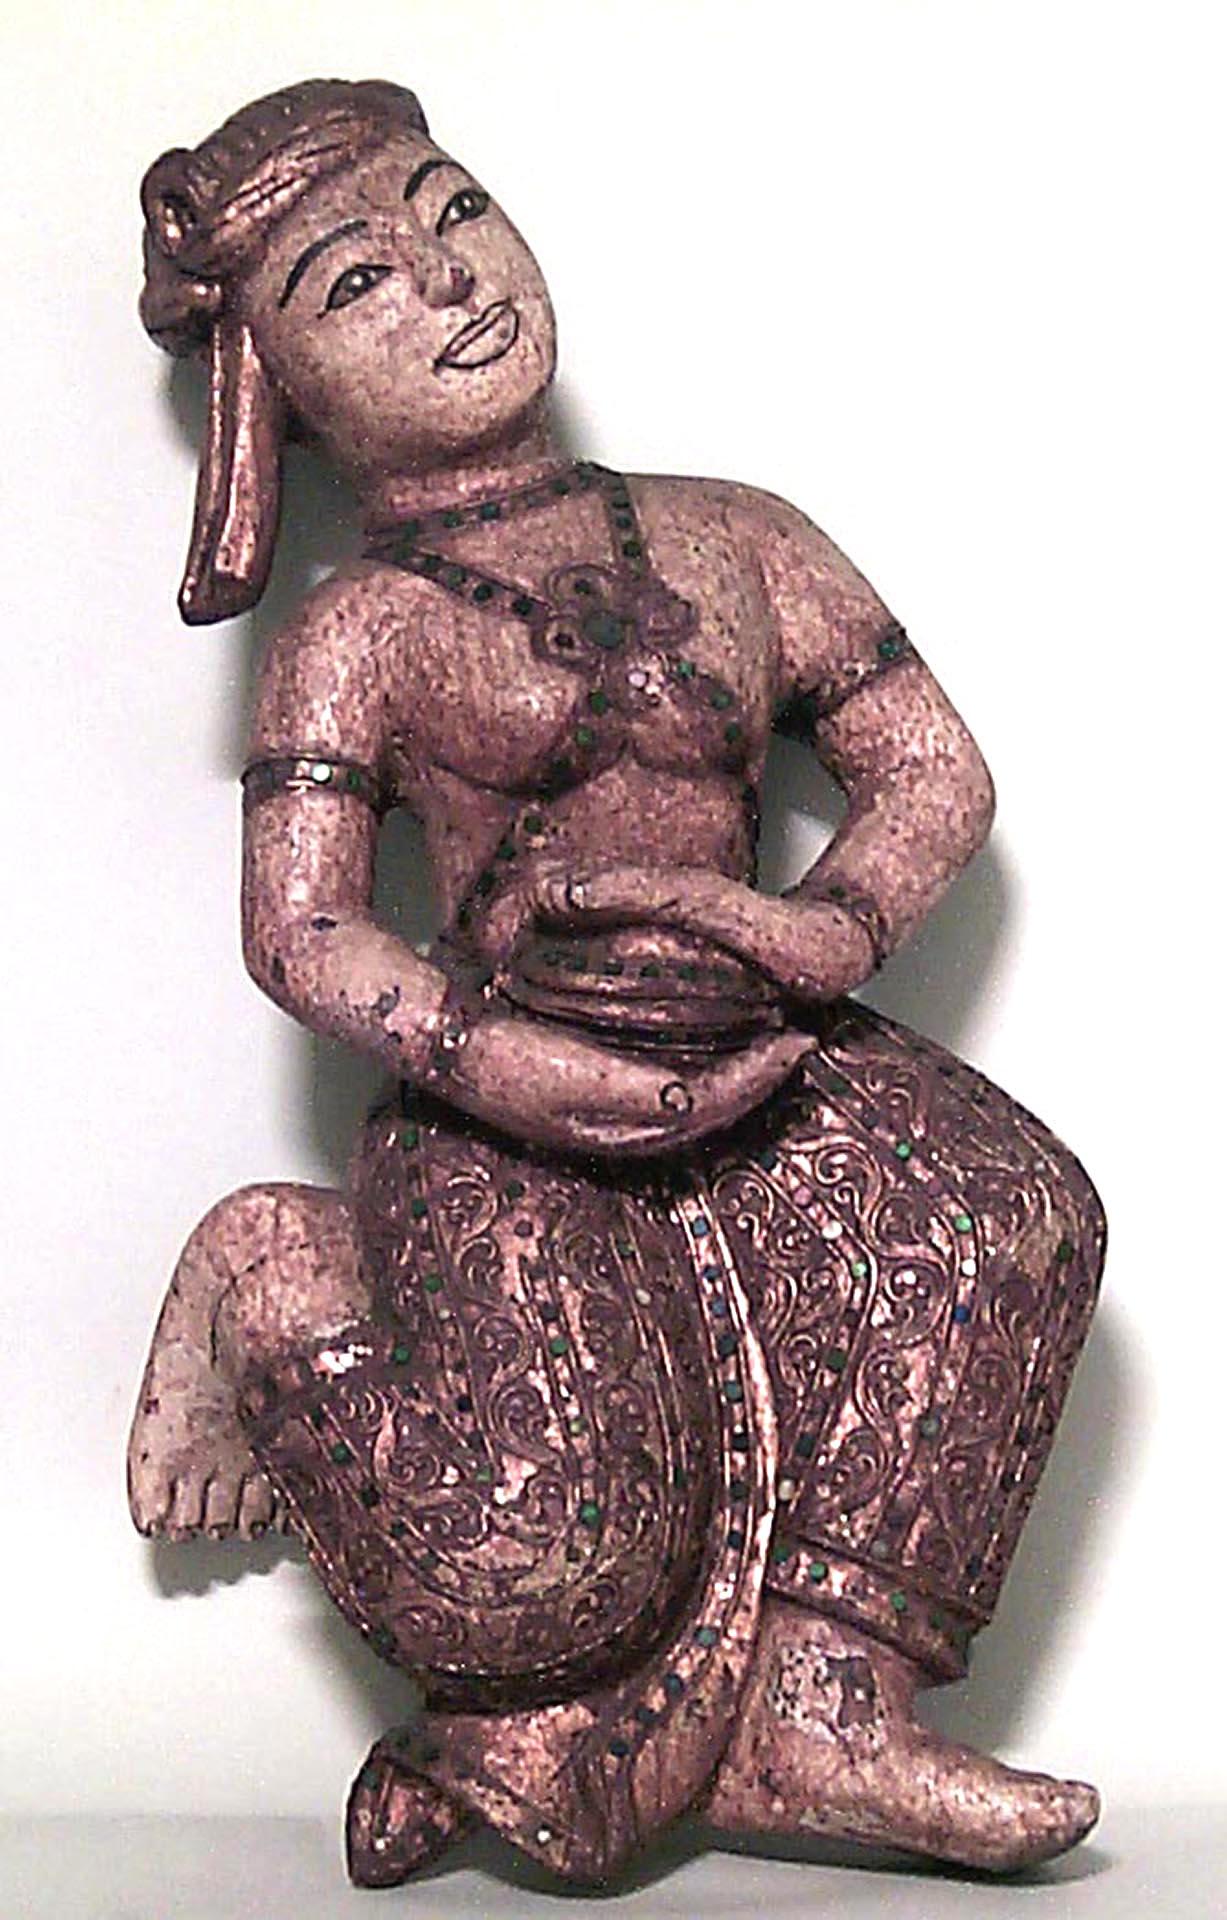 Satz von 4 kleinen tanzenden Hängefiguren im asiatischen Siam-Stil (19. Jh.) mit Musikinstrumenten und eingelegtem Glasrand.
